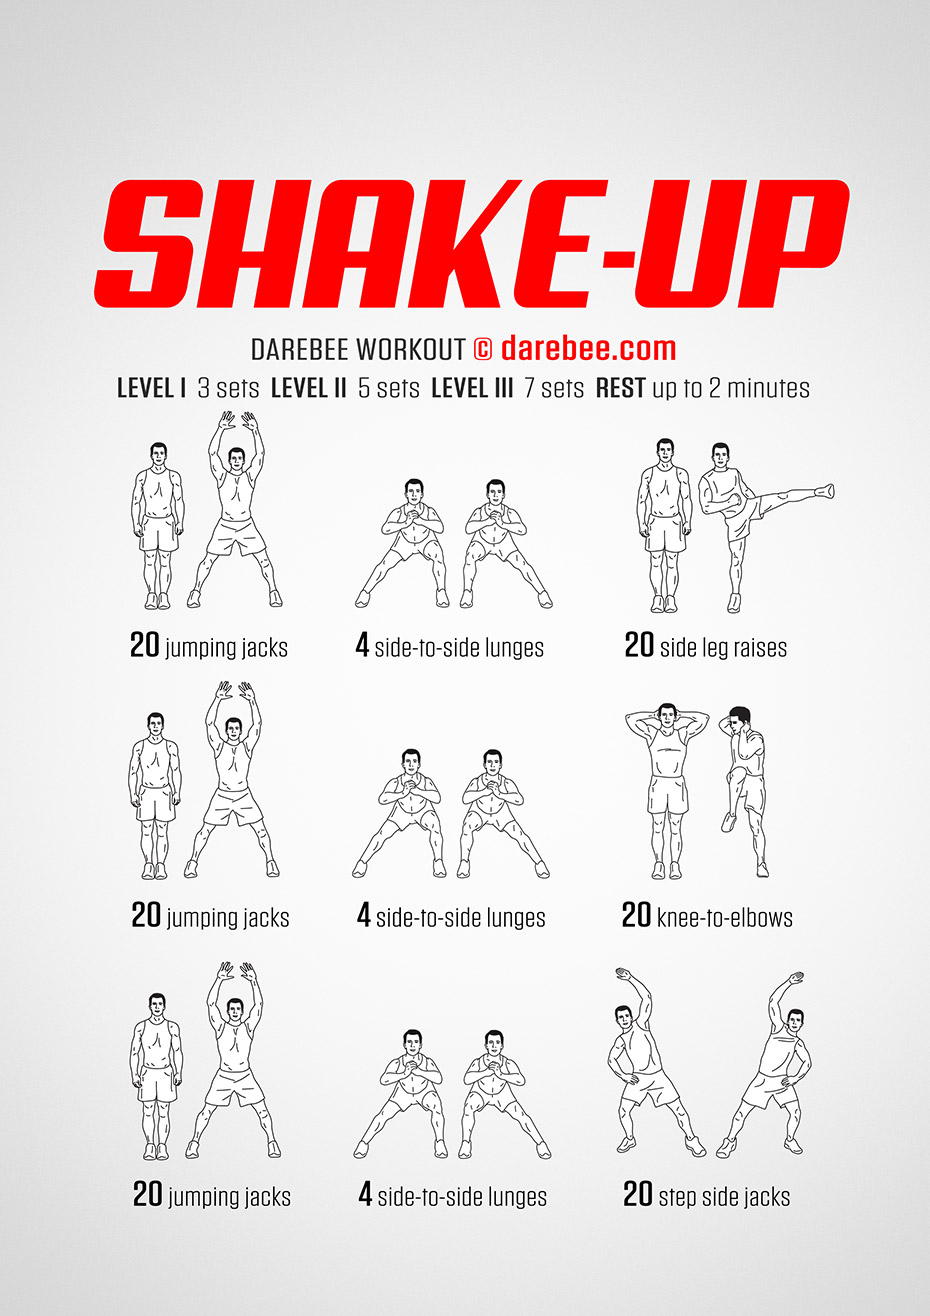 Shake-Up Workout